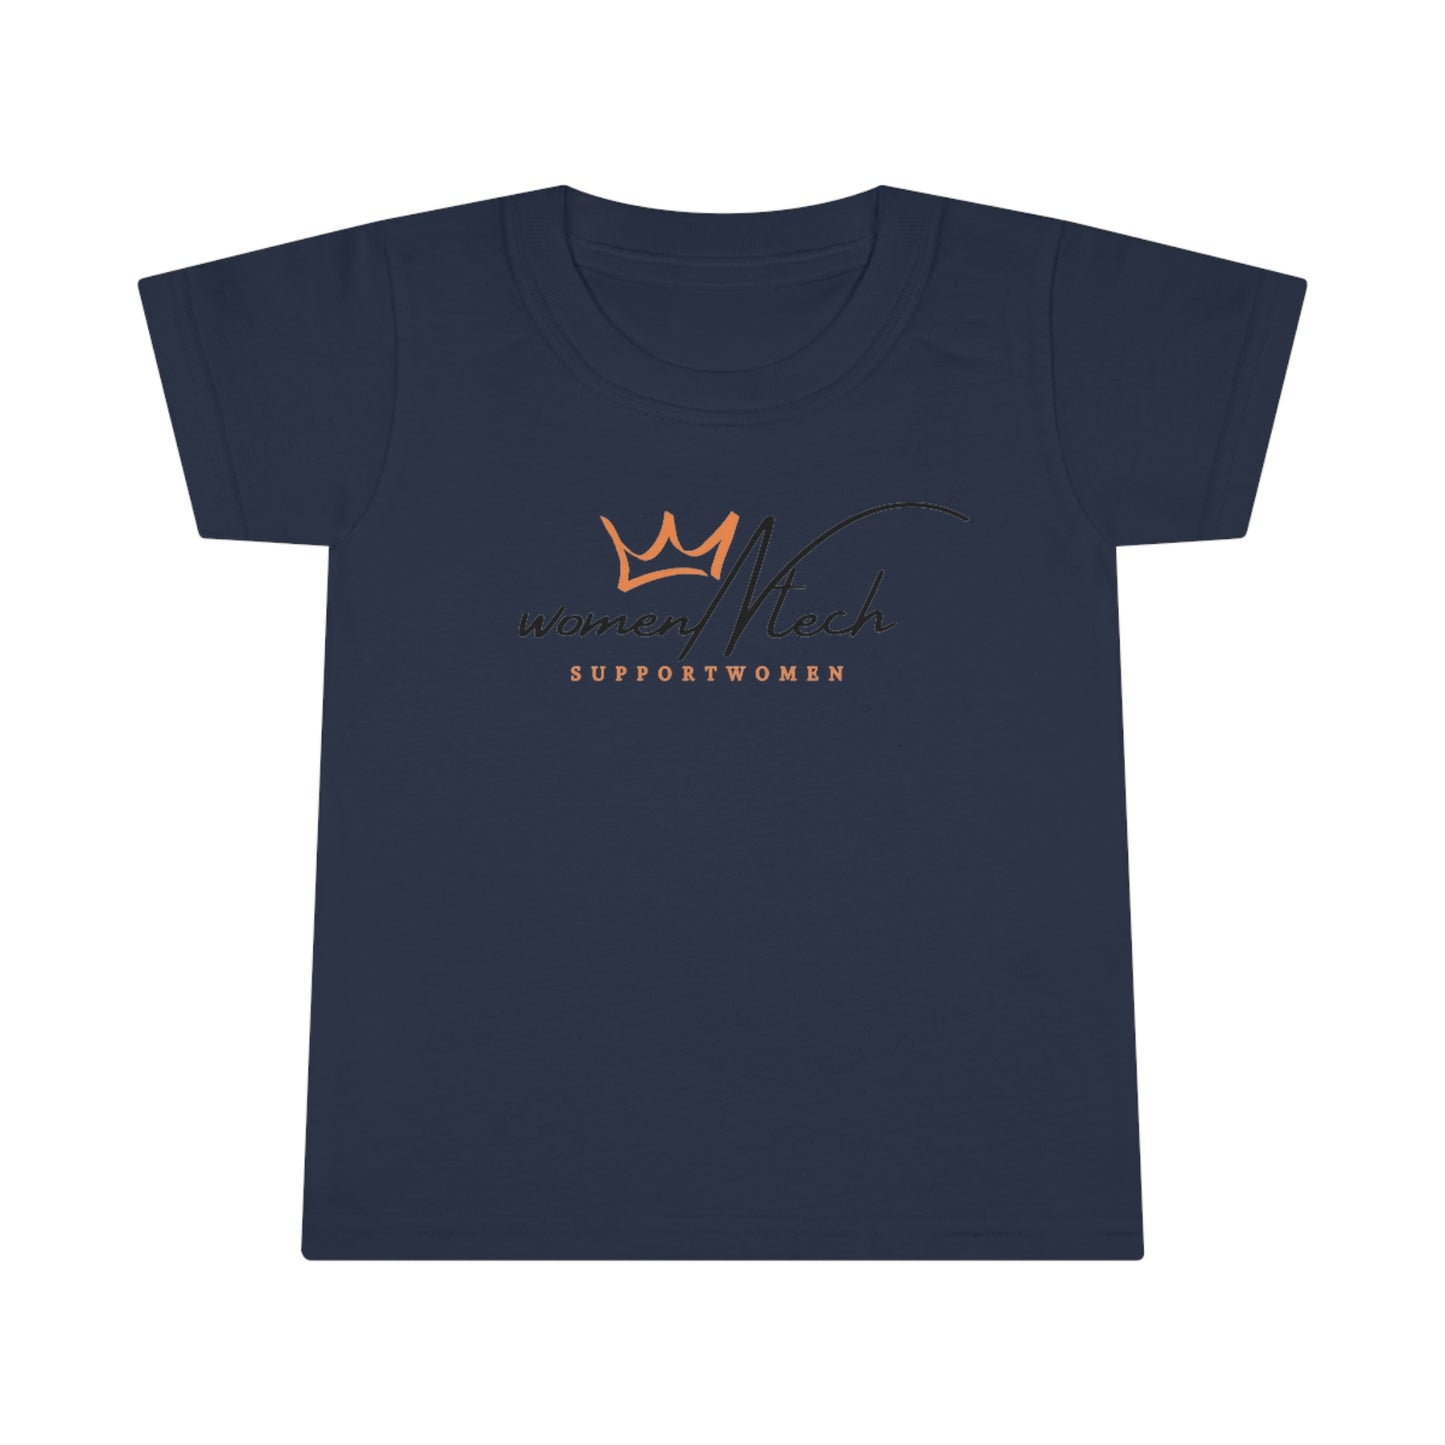 Best Premimum Toddler T-shirt - Purchase From WomenNtech